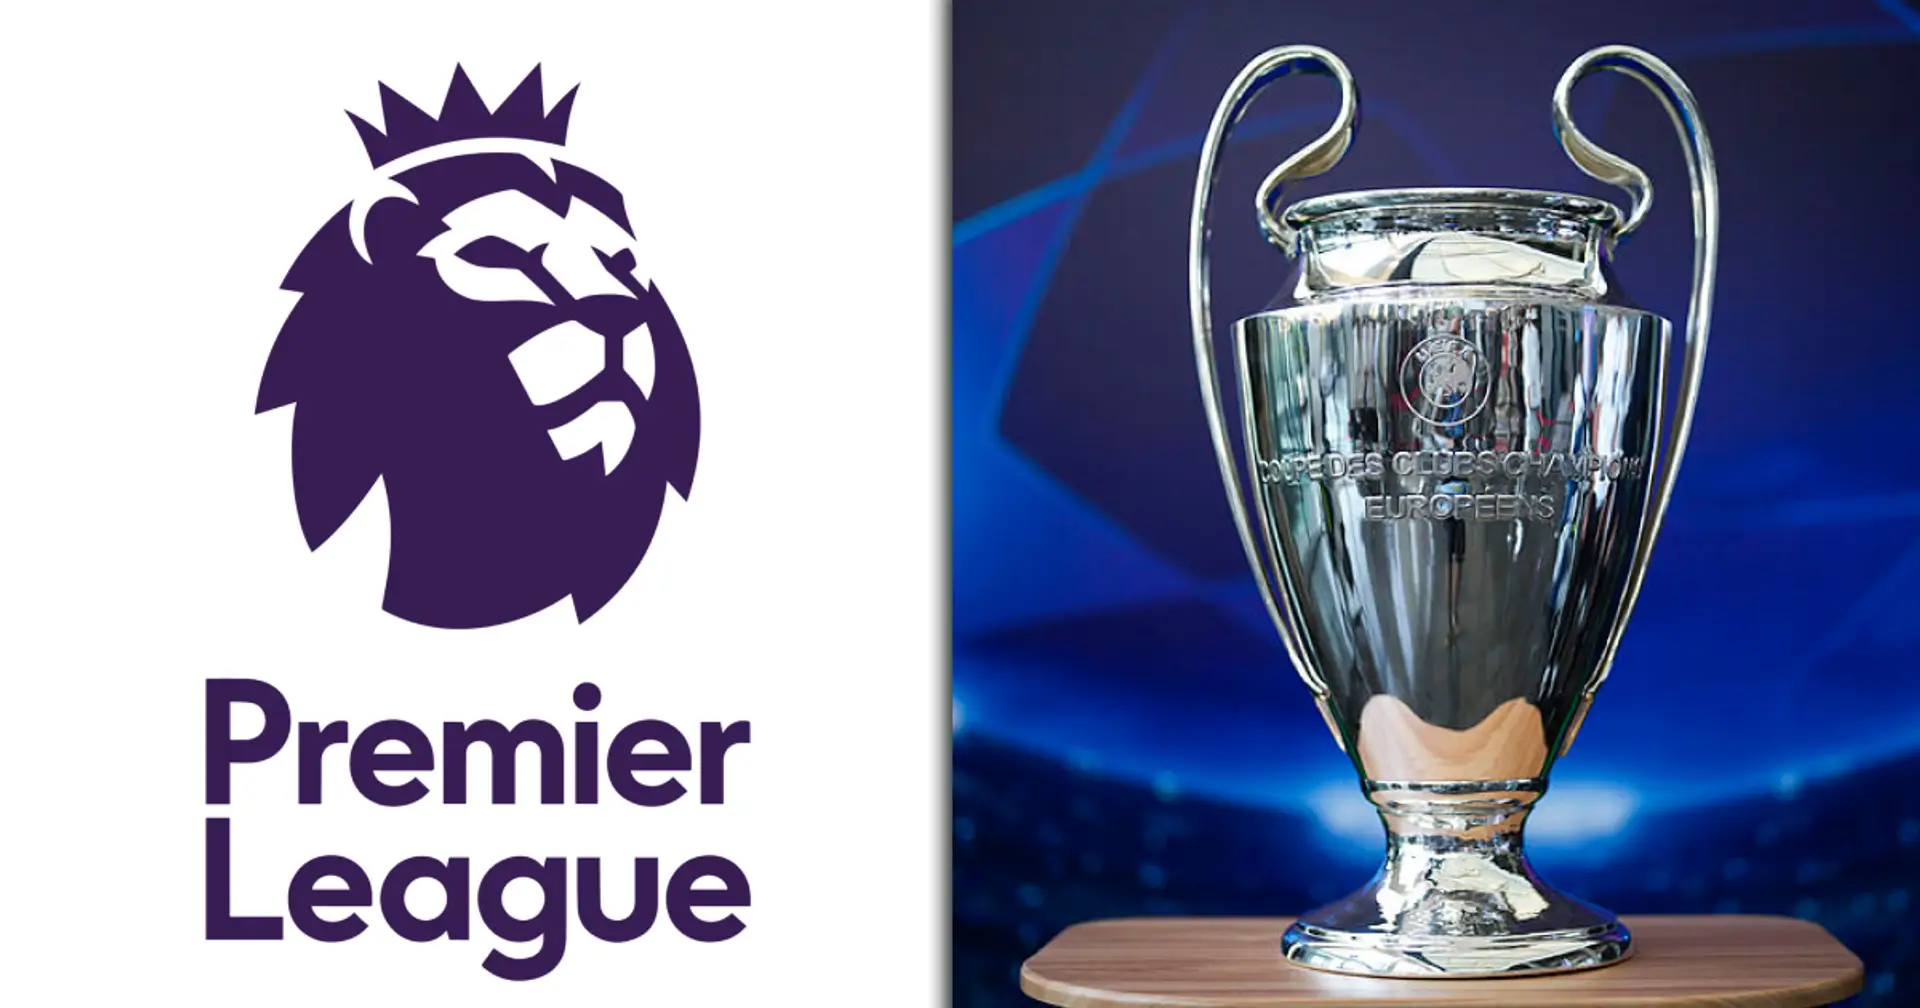 Premier League edges closer to extra Champions League spot